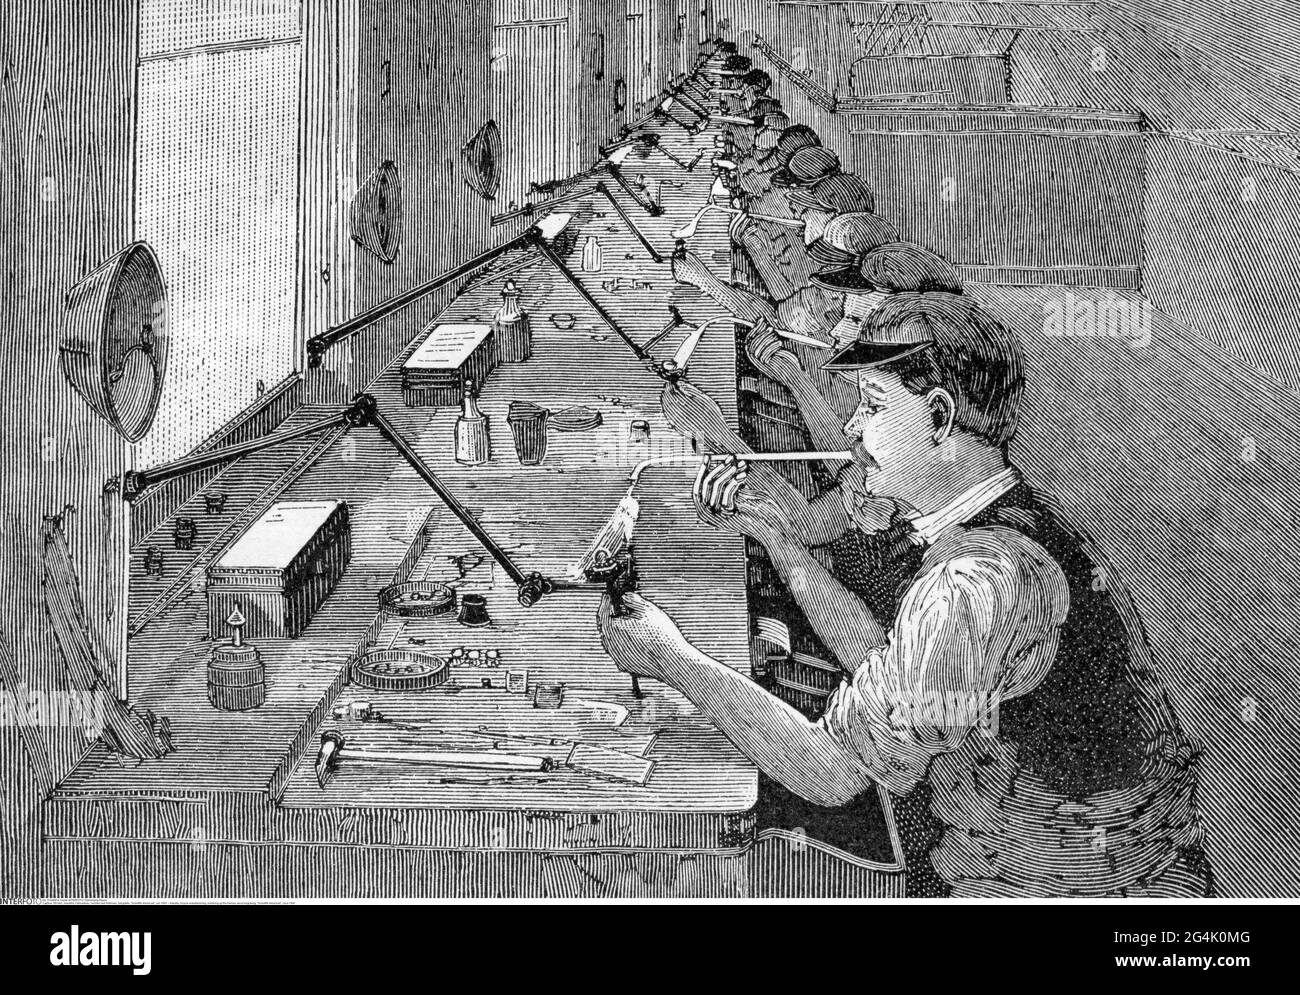 Industria, fabbricazione di biciclette, saldatura dei telai, incisione del legno, 'americano Cientific', circa 1895, IL COPYRIGHT DELL'ARTISTA NON DEVE ESSERE ELIMINATO Foto Stock